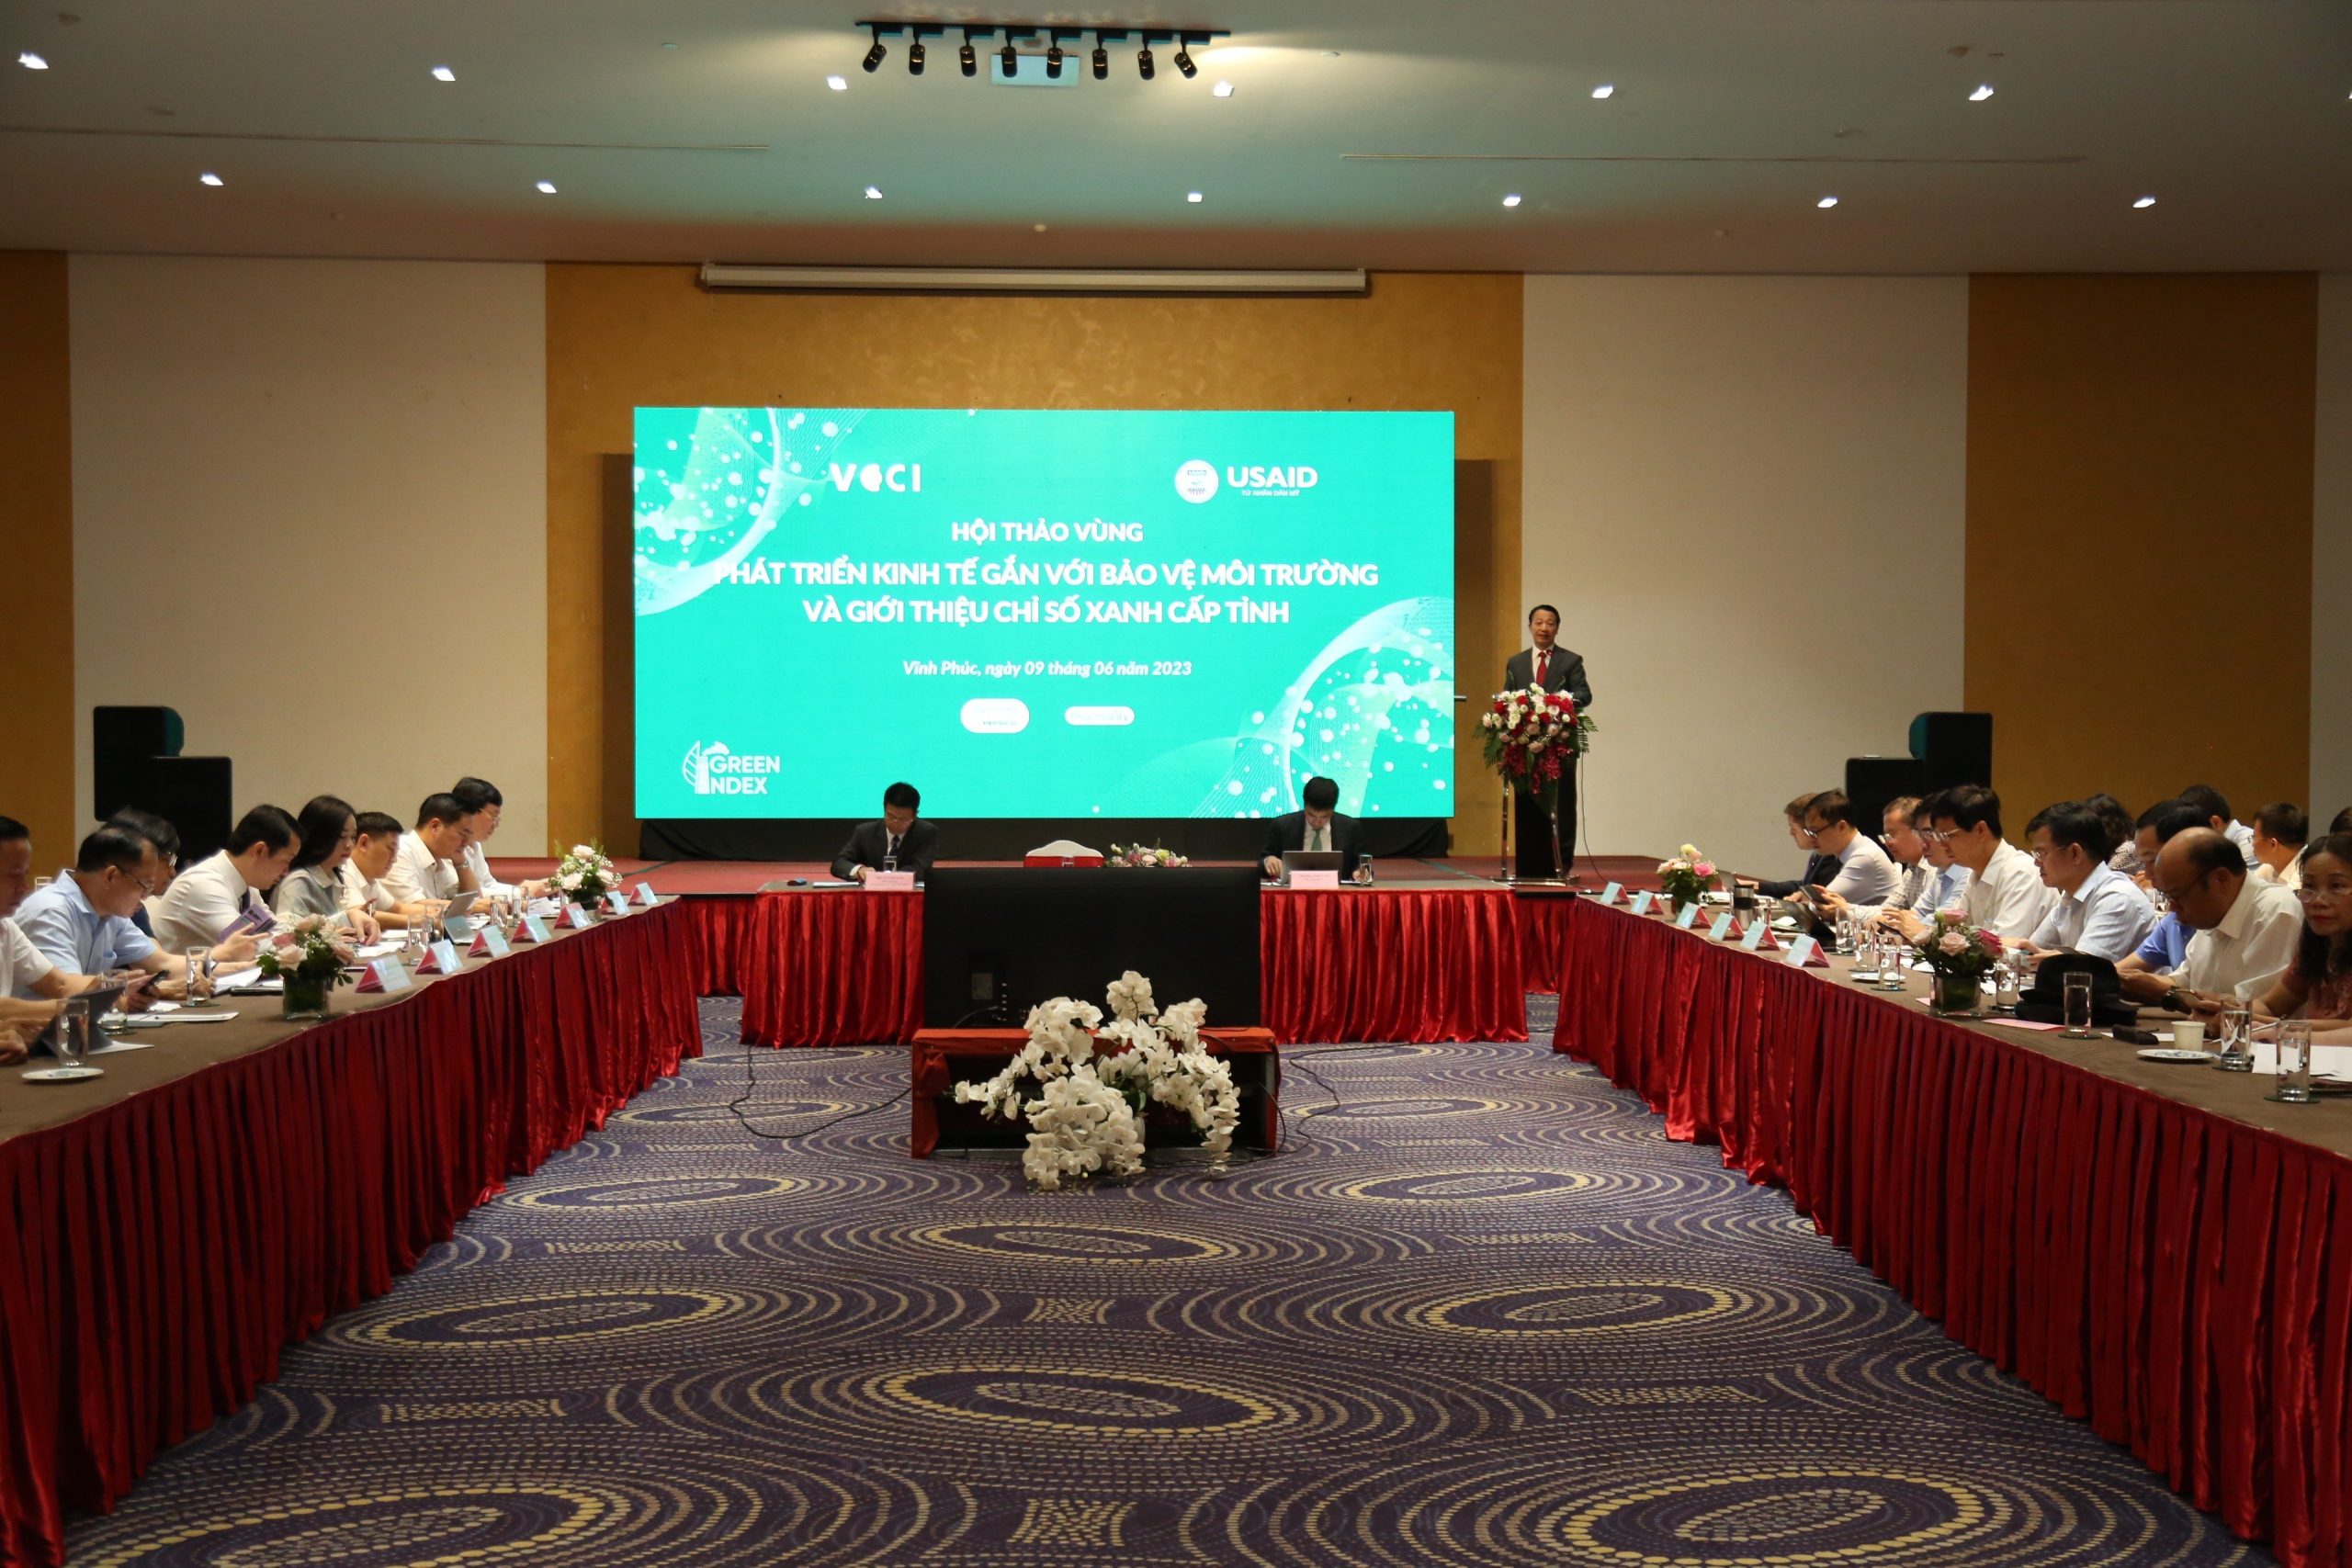 Hội thảo Vùng Đồng bằng sông Hồng về phát triển kinh tế gắn với bảo vệ môi trường và giới thiệu Chỉ số Xanh cấp tỉnh